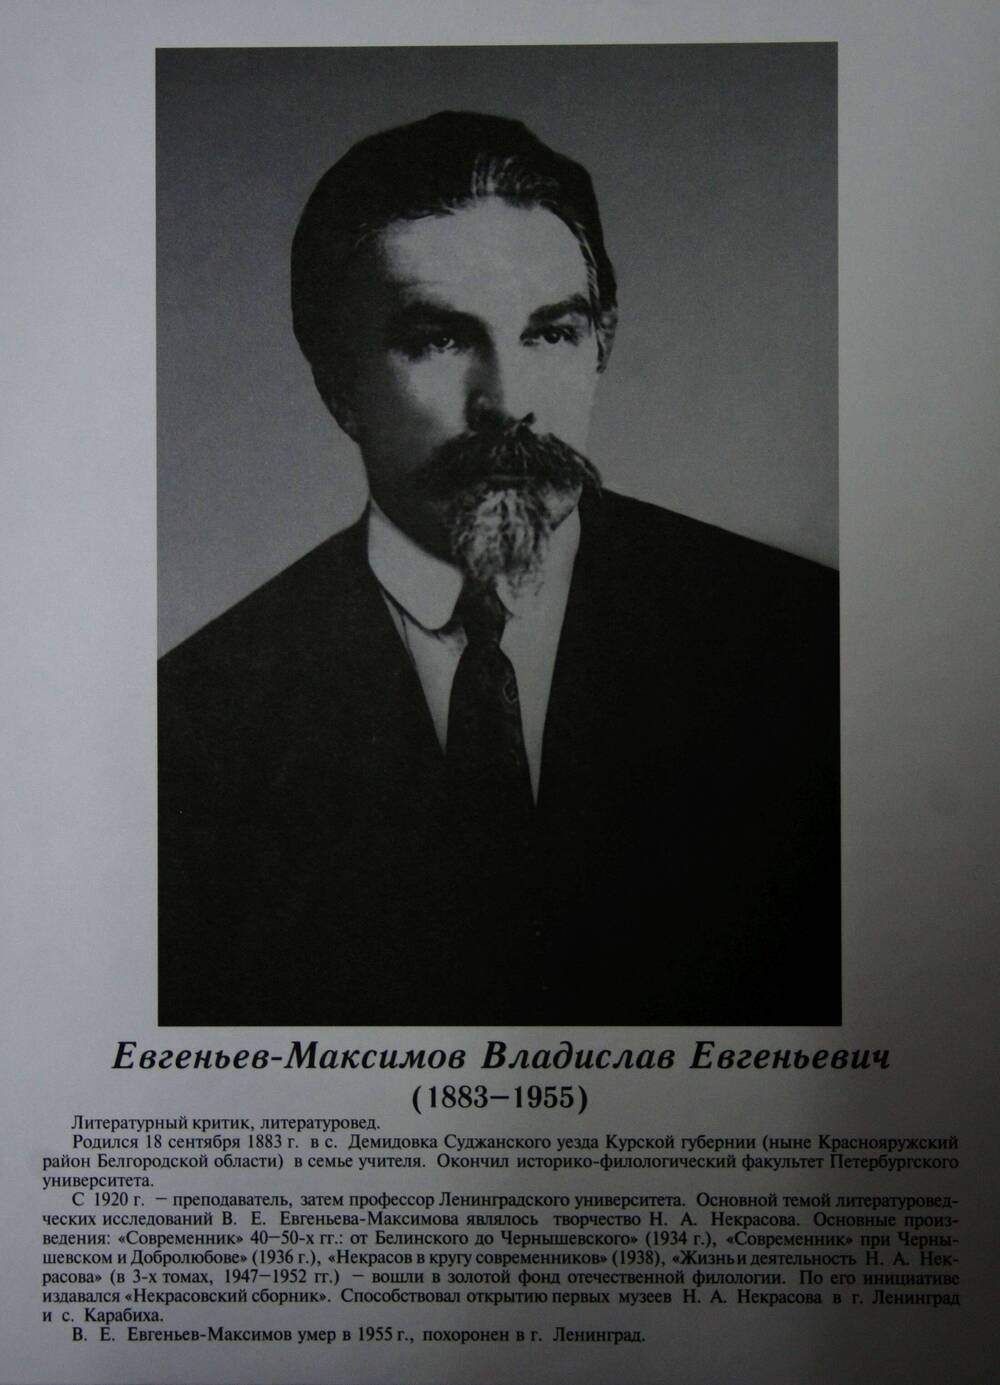 Плакат (фотопортрет) из комплекта Галерея славных имен Белгородчины. Евгеньев-Максимов Владислав Евгеньевич (1883-1955).